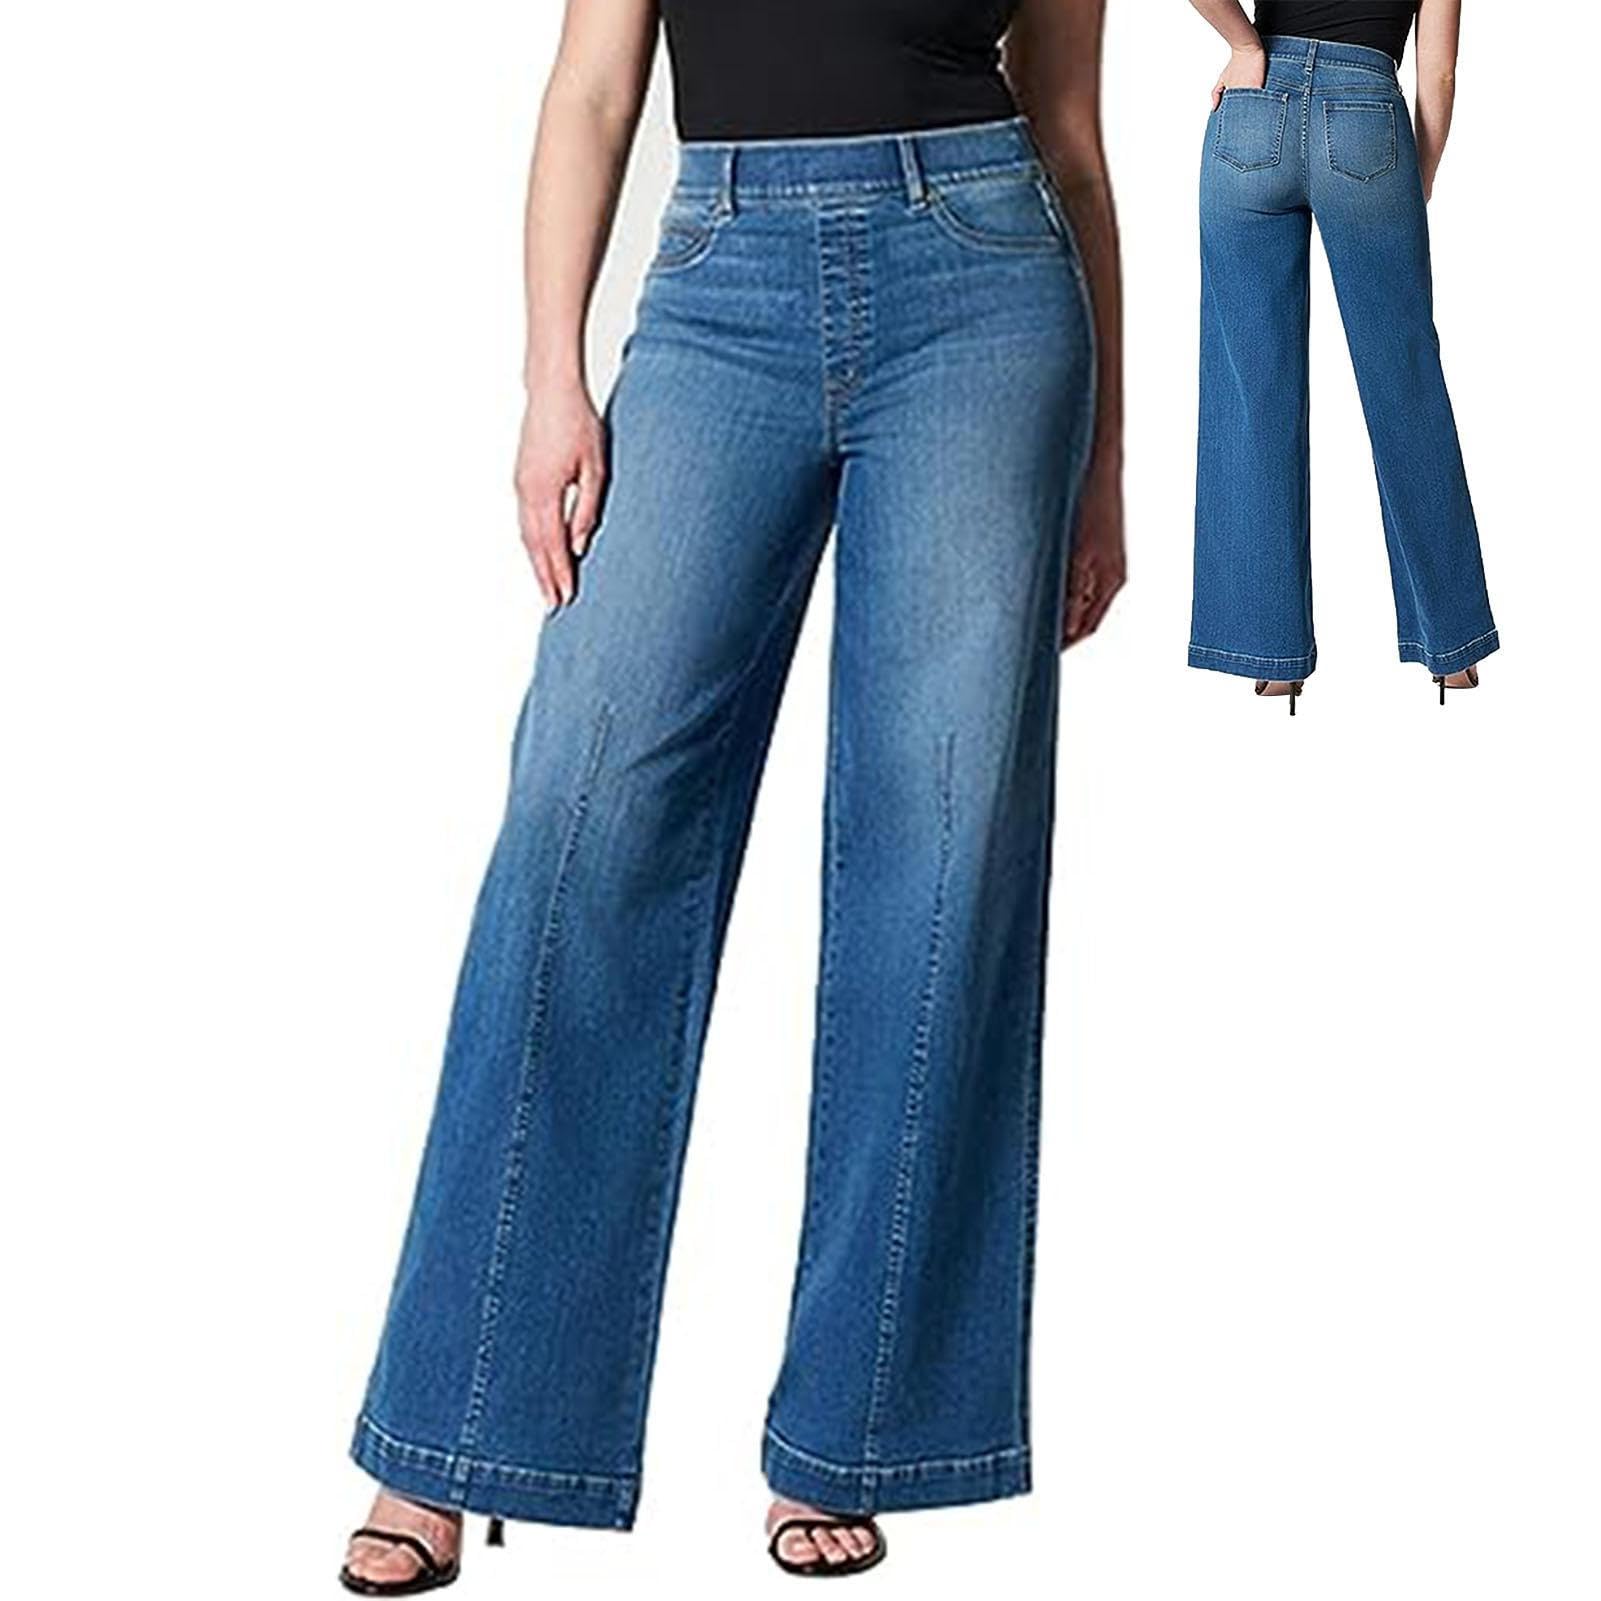 Kasmole Jeans mit Naht vorne - Pull-On Neuheit Stretchy Damen Jeans mit hoher Elastizität | Damenmode für Party, Strand, Zuhause, Arbeit, Urlaub, Dating